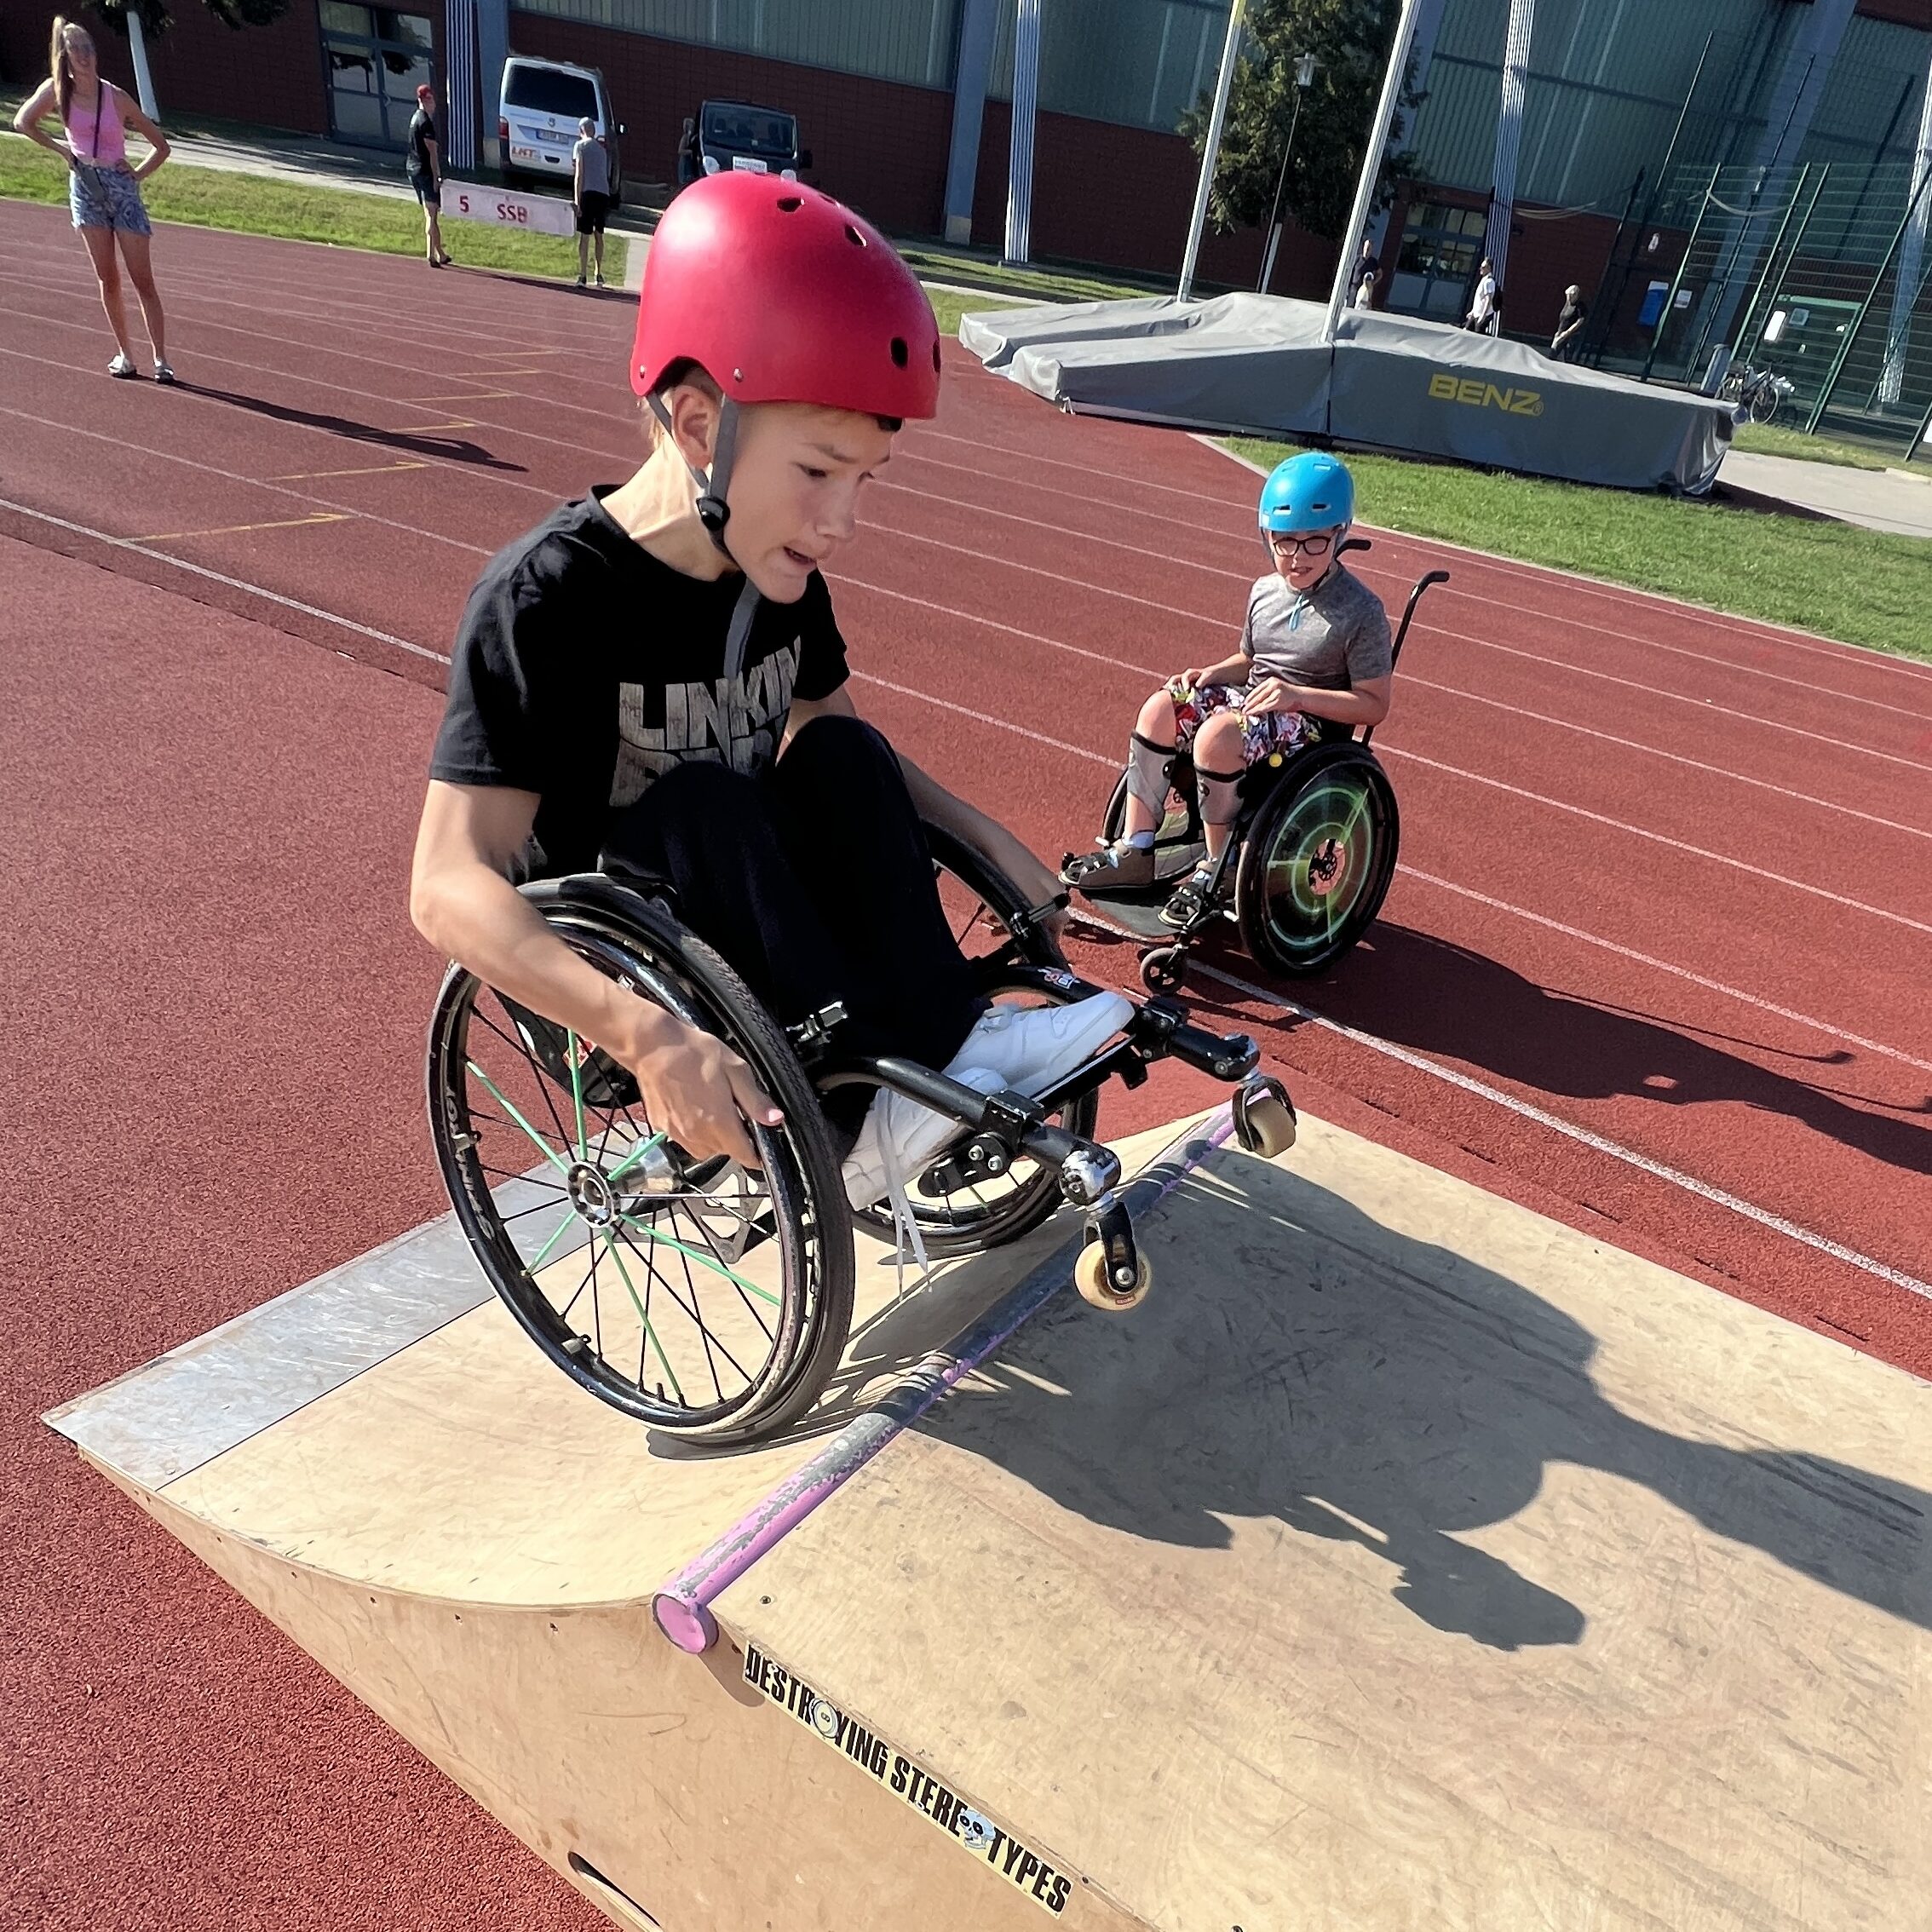 Ein Junge im Rollstuhl macht einen Trick auf einer mobilen Skaterampe, die auf einer Leichtathletikbahn steht. Daneben staunt ein weiterer Junge im Rollstuhl.